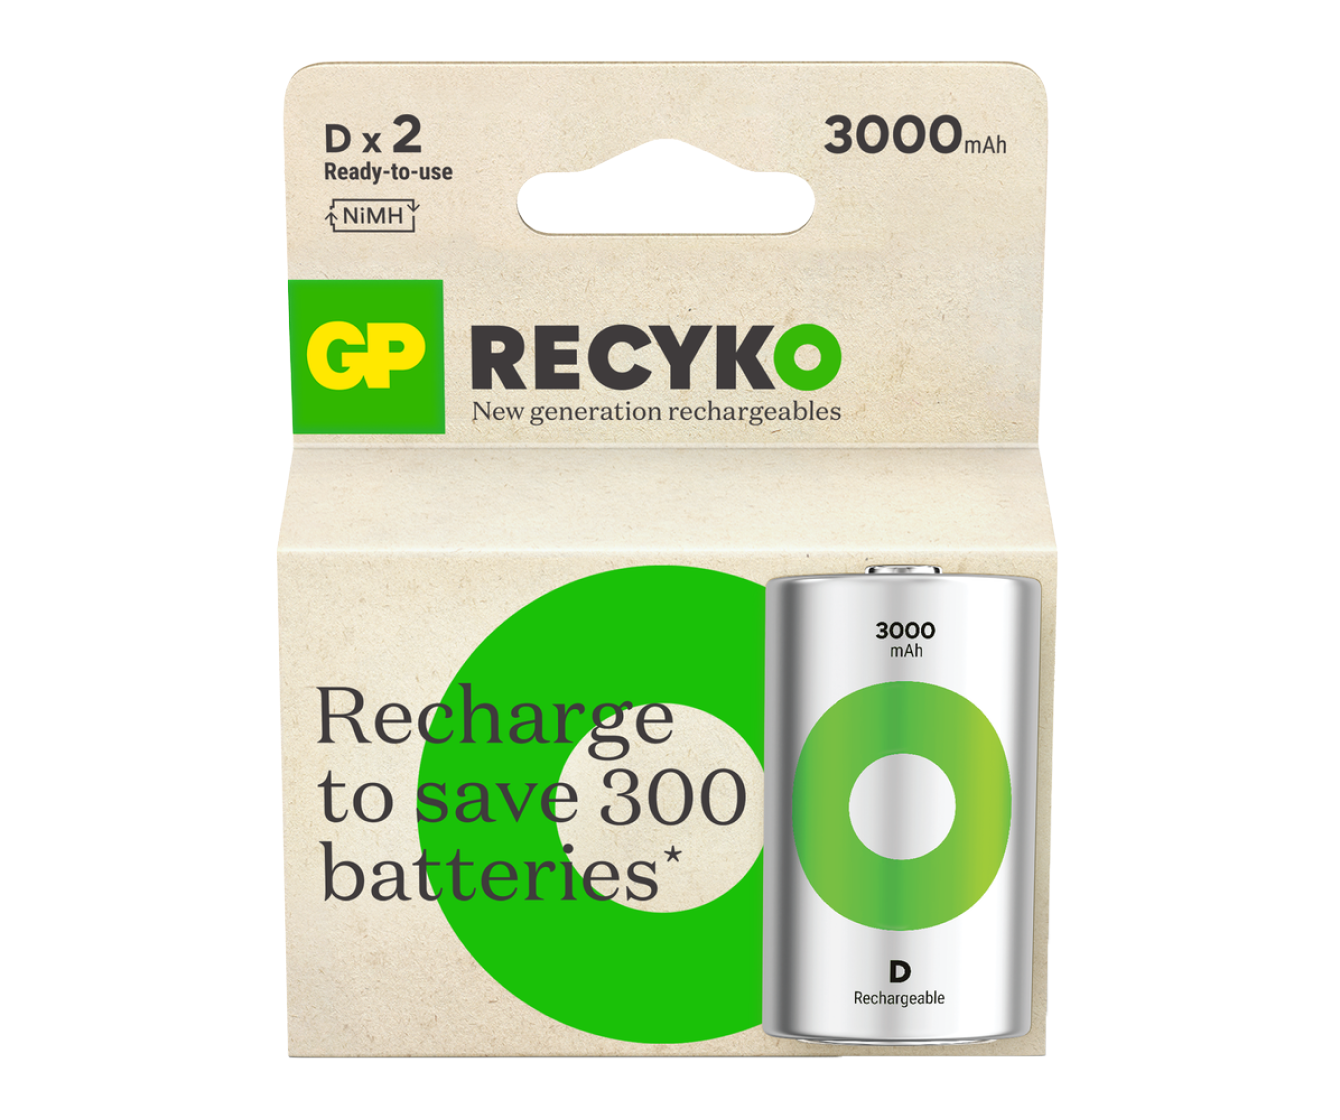 GP Recyko D Rechargeable Batteries